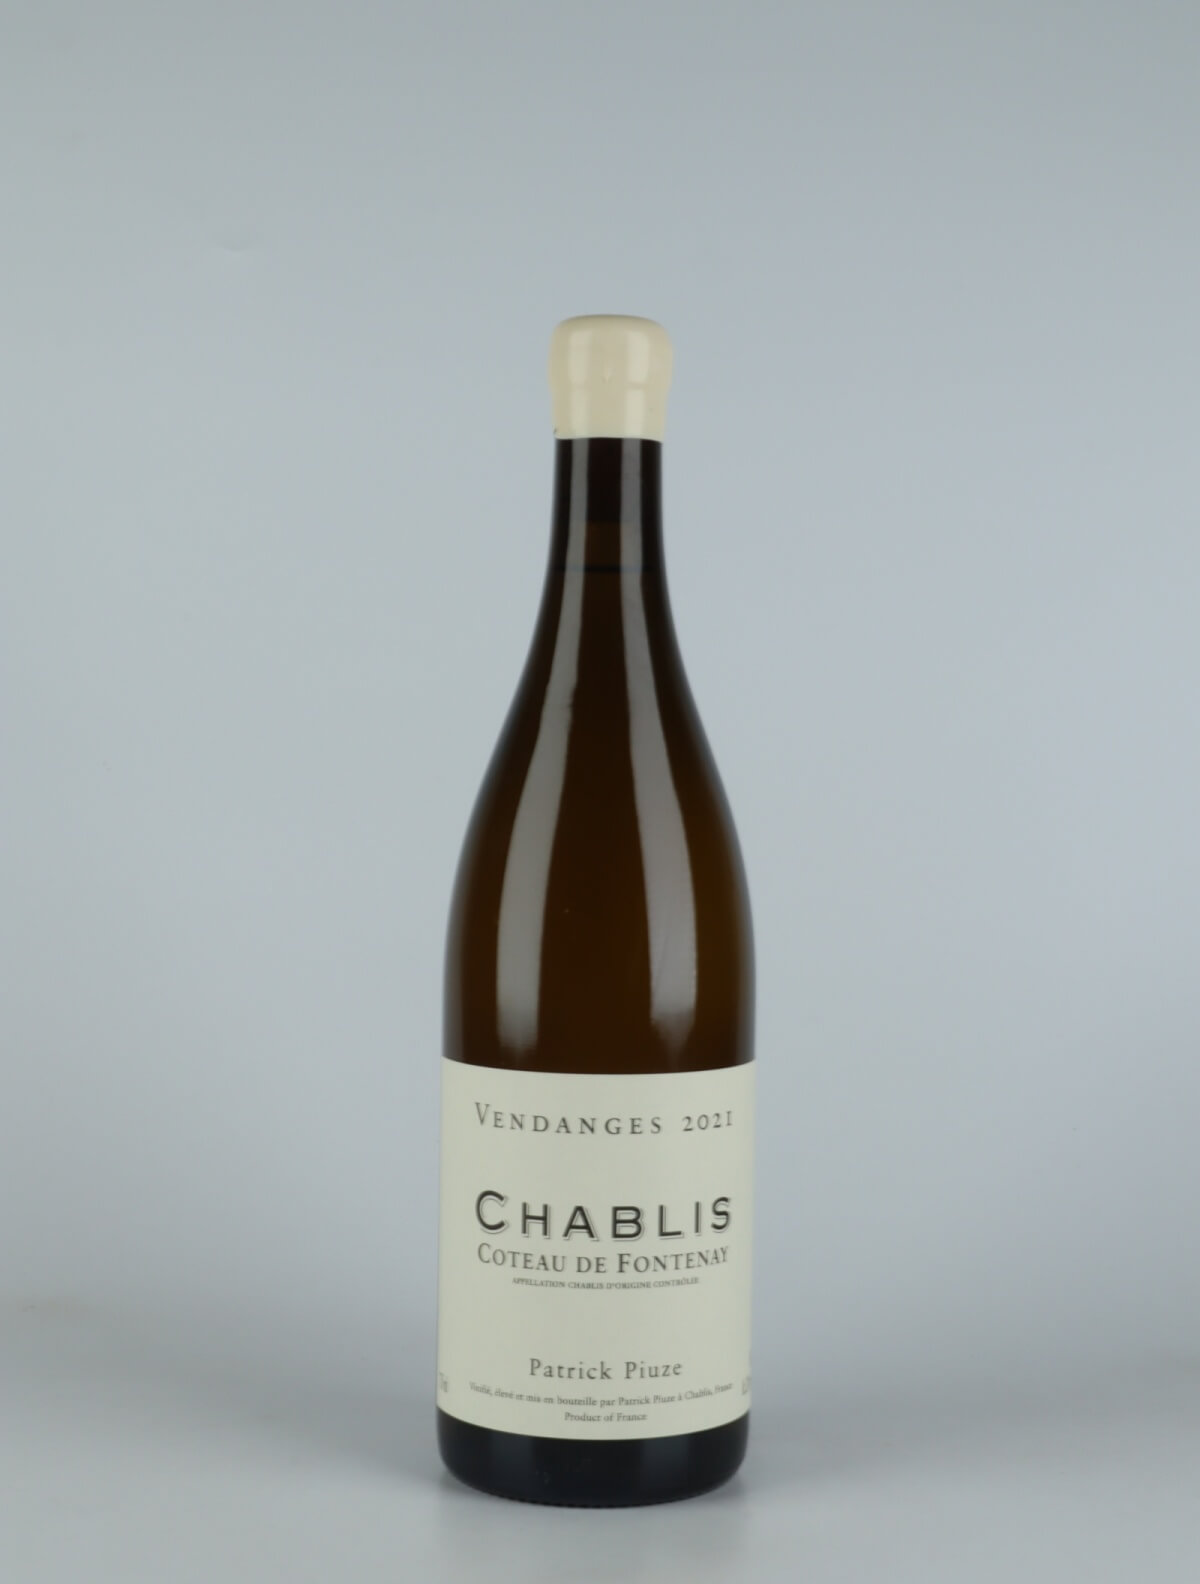 En flaske 2021 Chablis - Coteau de Fontenay Hvidvin fra Patrick Piuze, Bourgogne i Frankrig